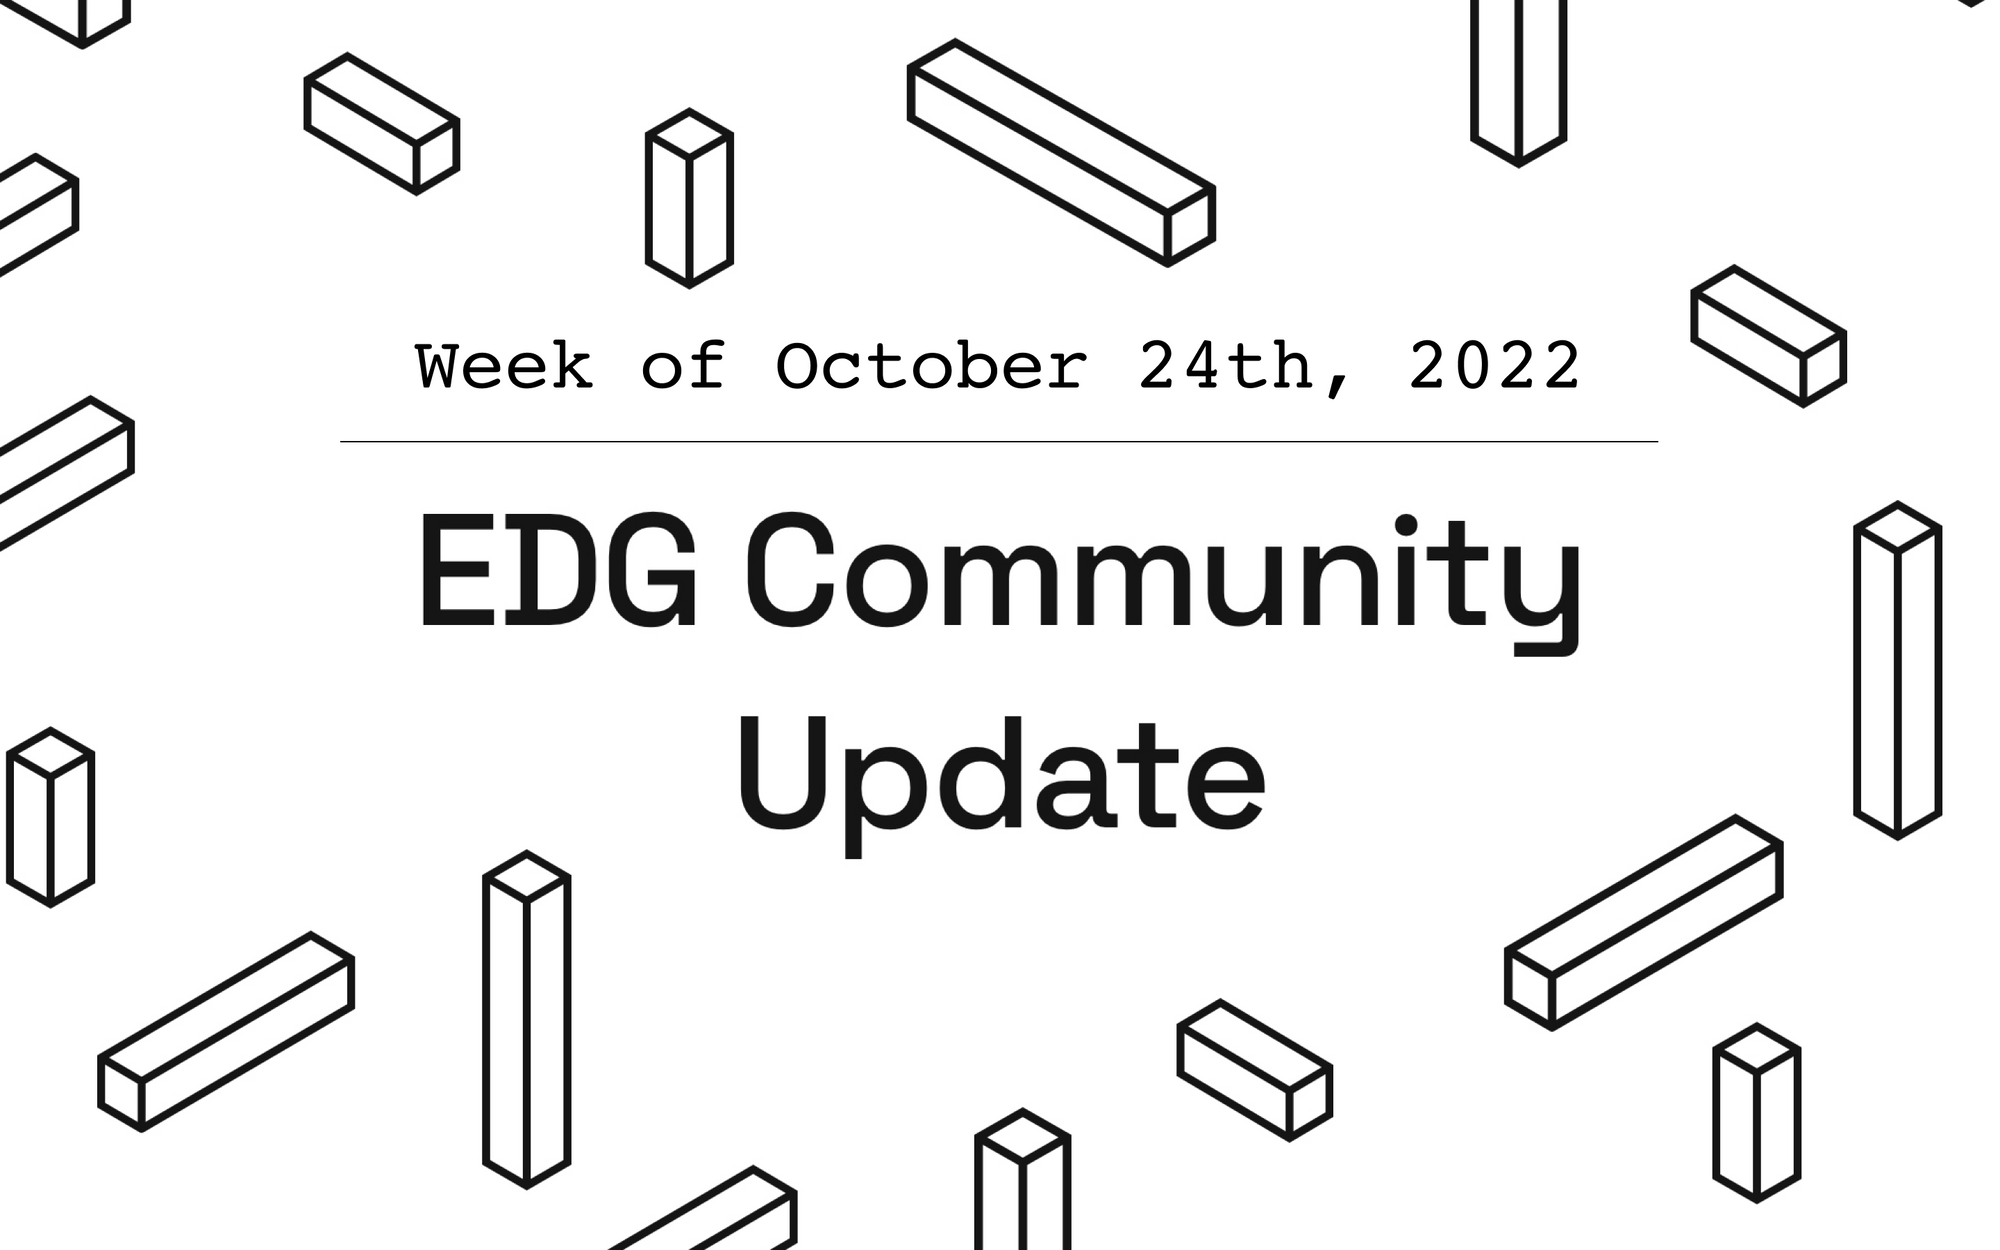 EDG Community Update: Week of October 24th, 2022